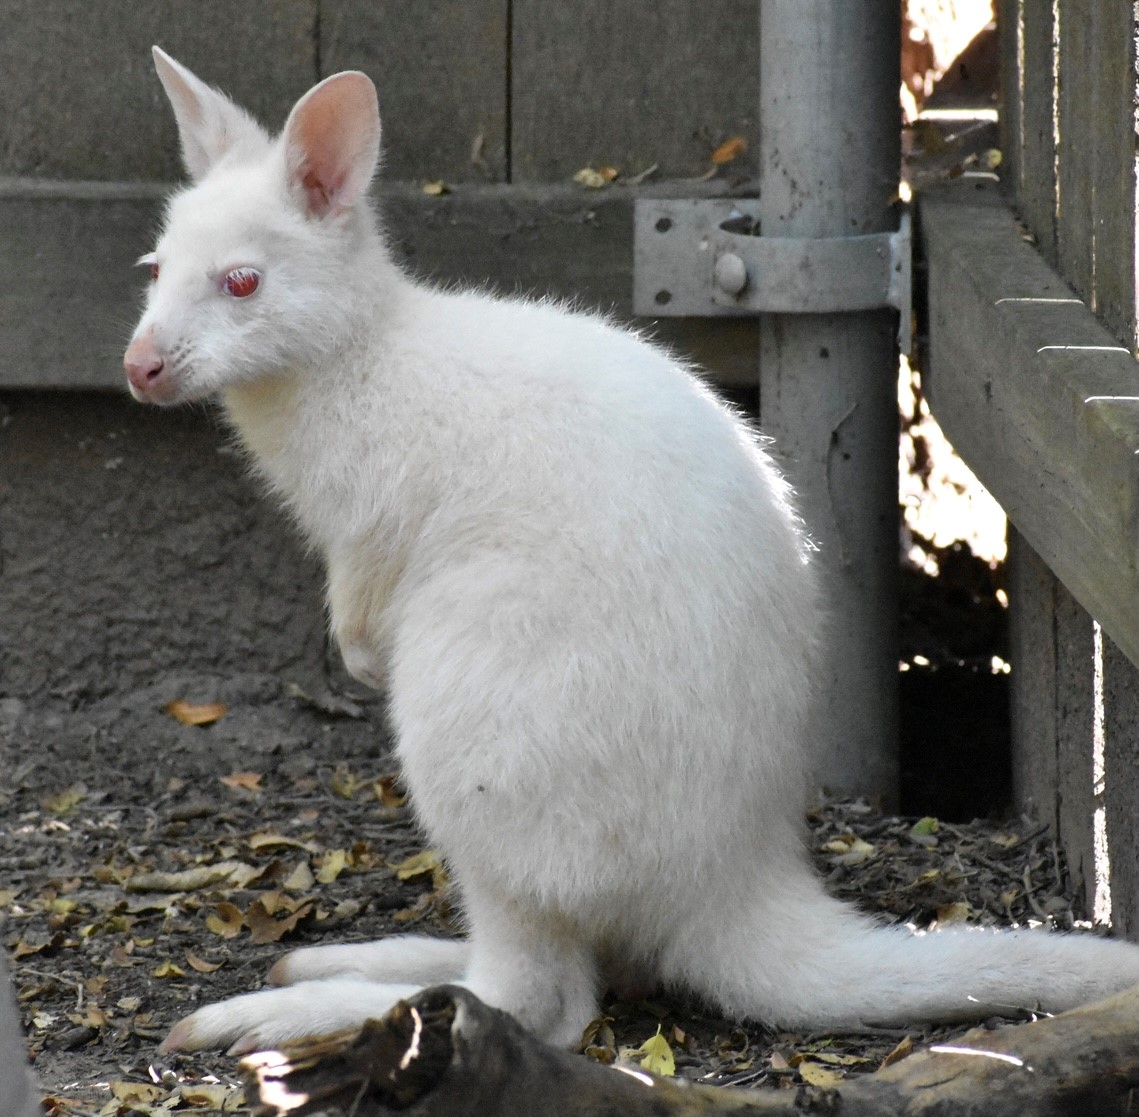 Sự đáng yêu và dễ thương của chuột túi còn được tôn lên với tông màu trắng trong bức ảnh này. Ngắm nhìn chúng trong những hoạt động vui nhộn và đáng yêu, bạn sẽ cảm thấy thật bình an và thư thái.